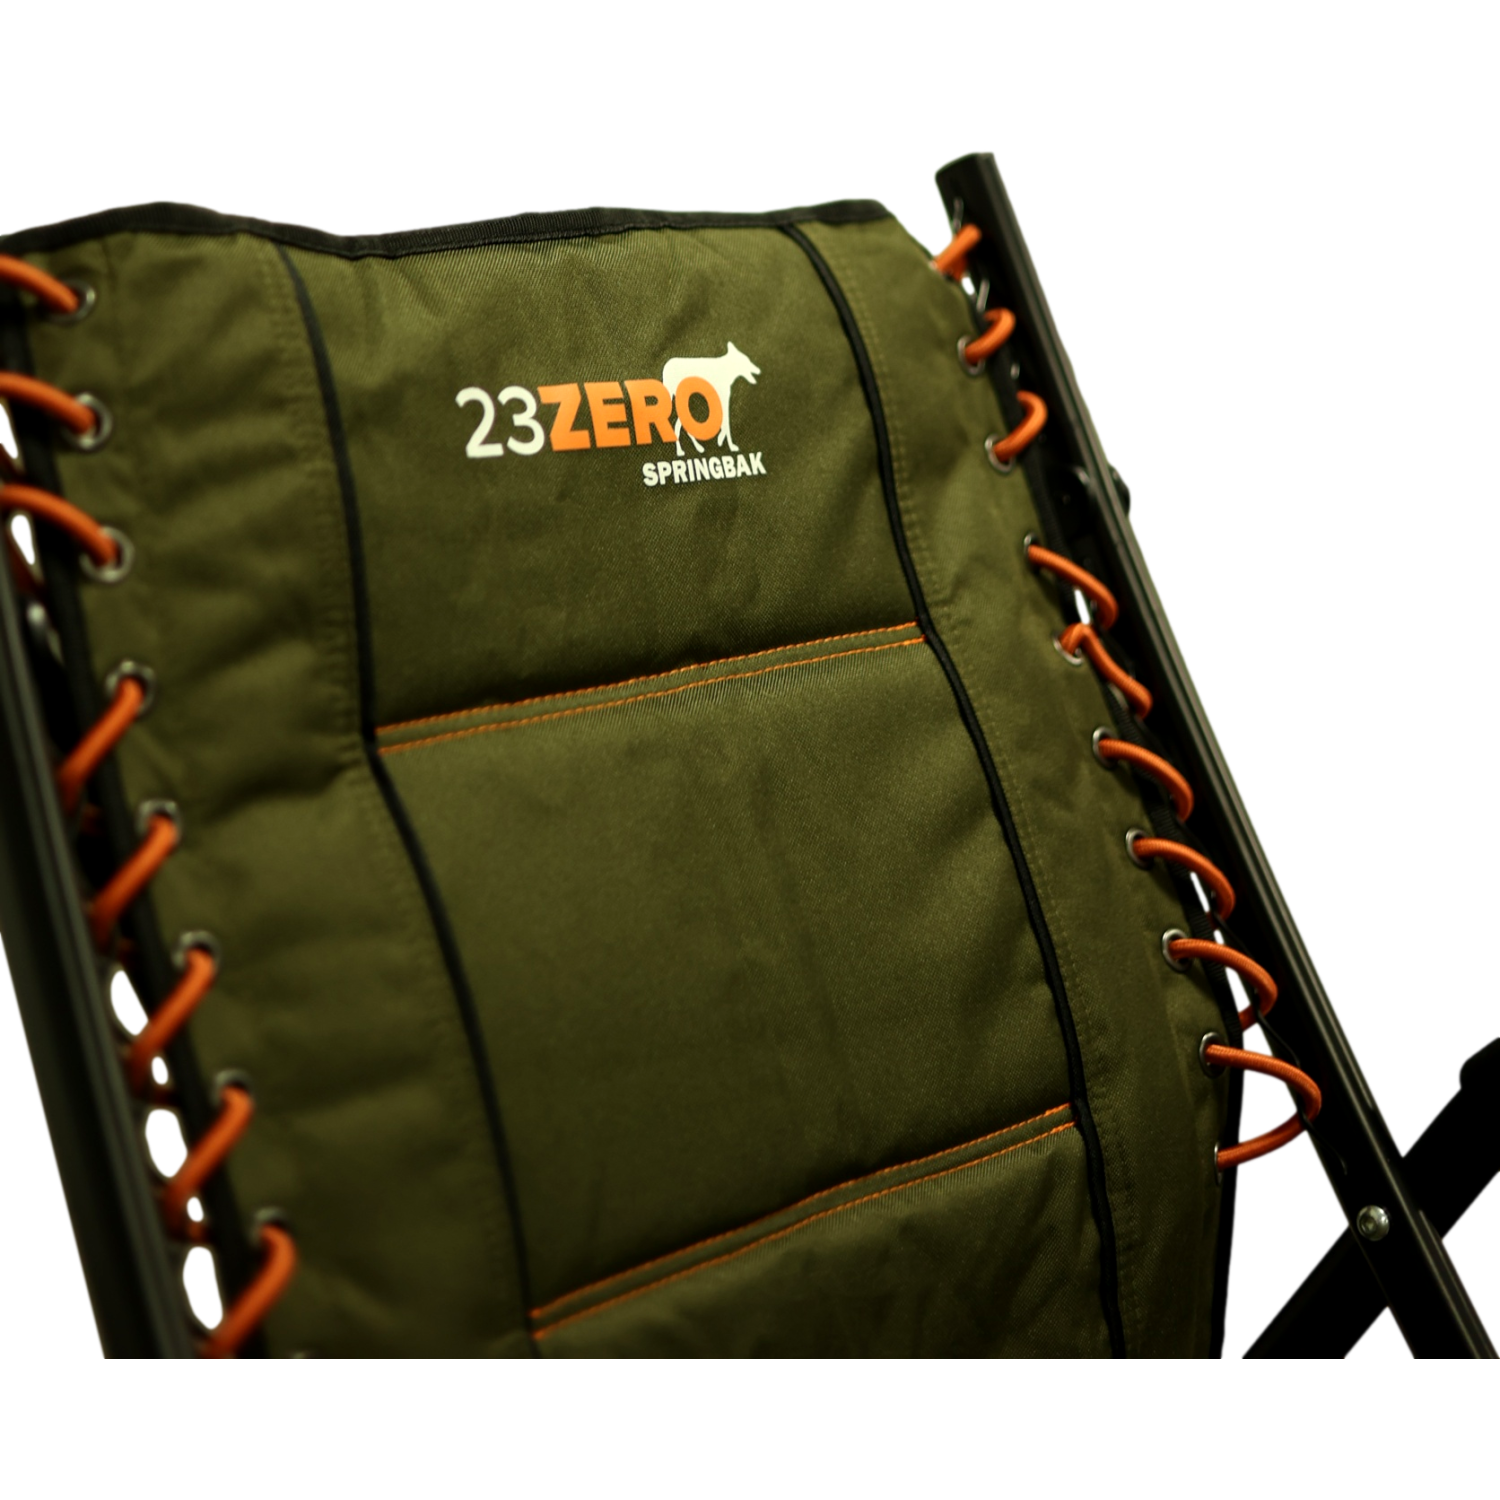 23ZERO Springbak Chair